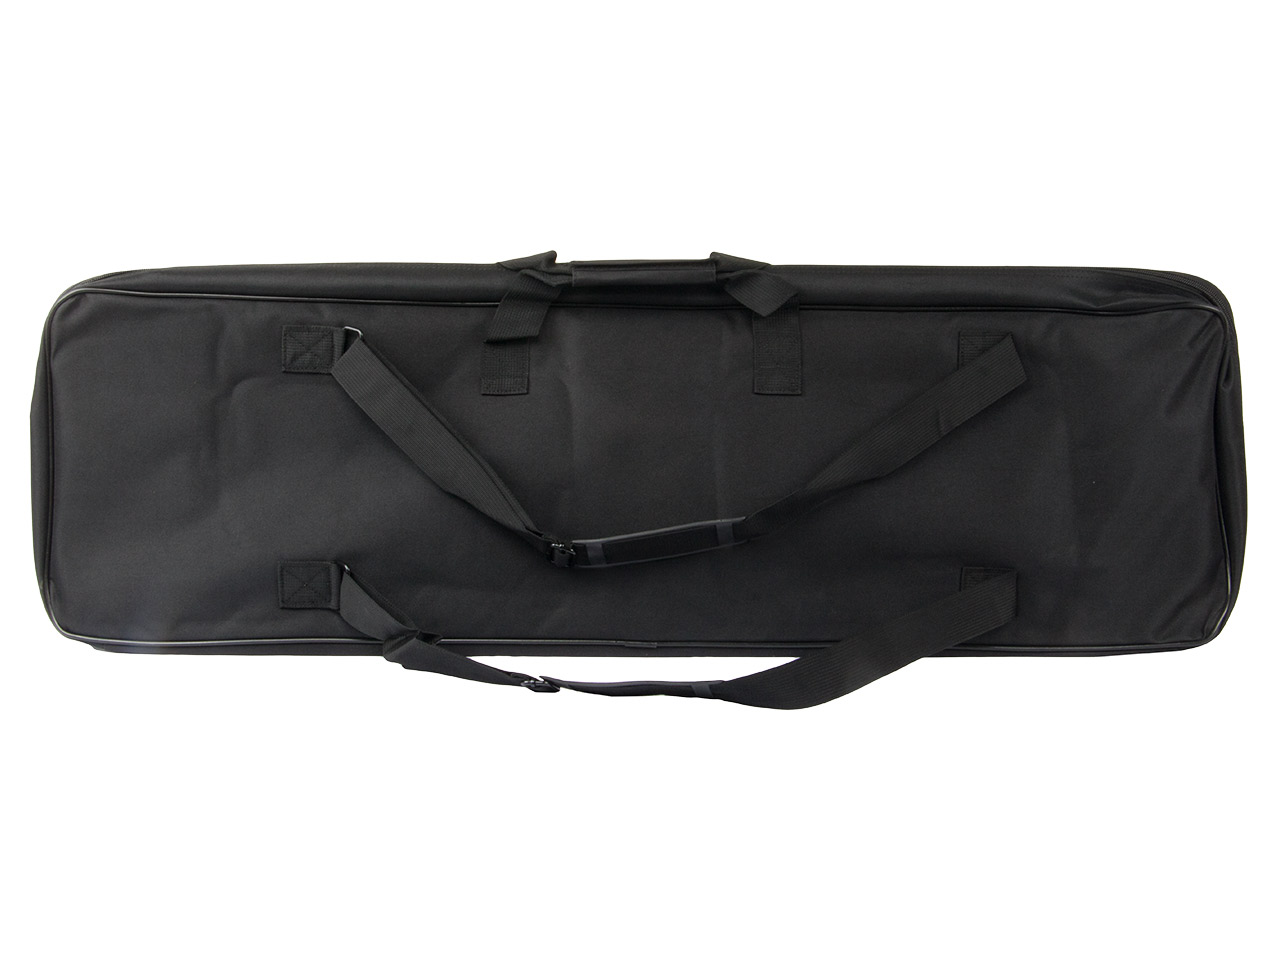 Gewehrfutteral Waffentasche Swiss Arms medium 95 x 25 cm abschließbar Nylon Außentaschen schwarz